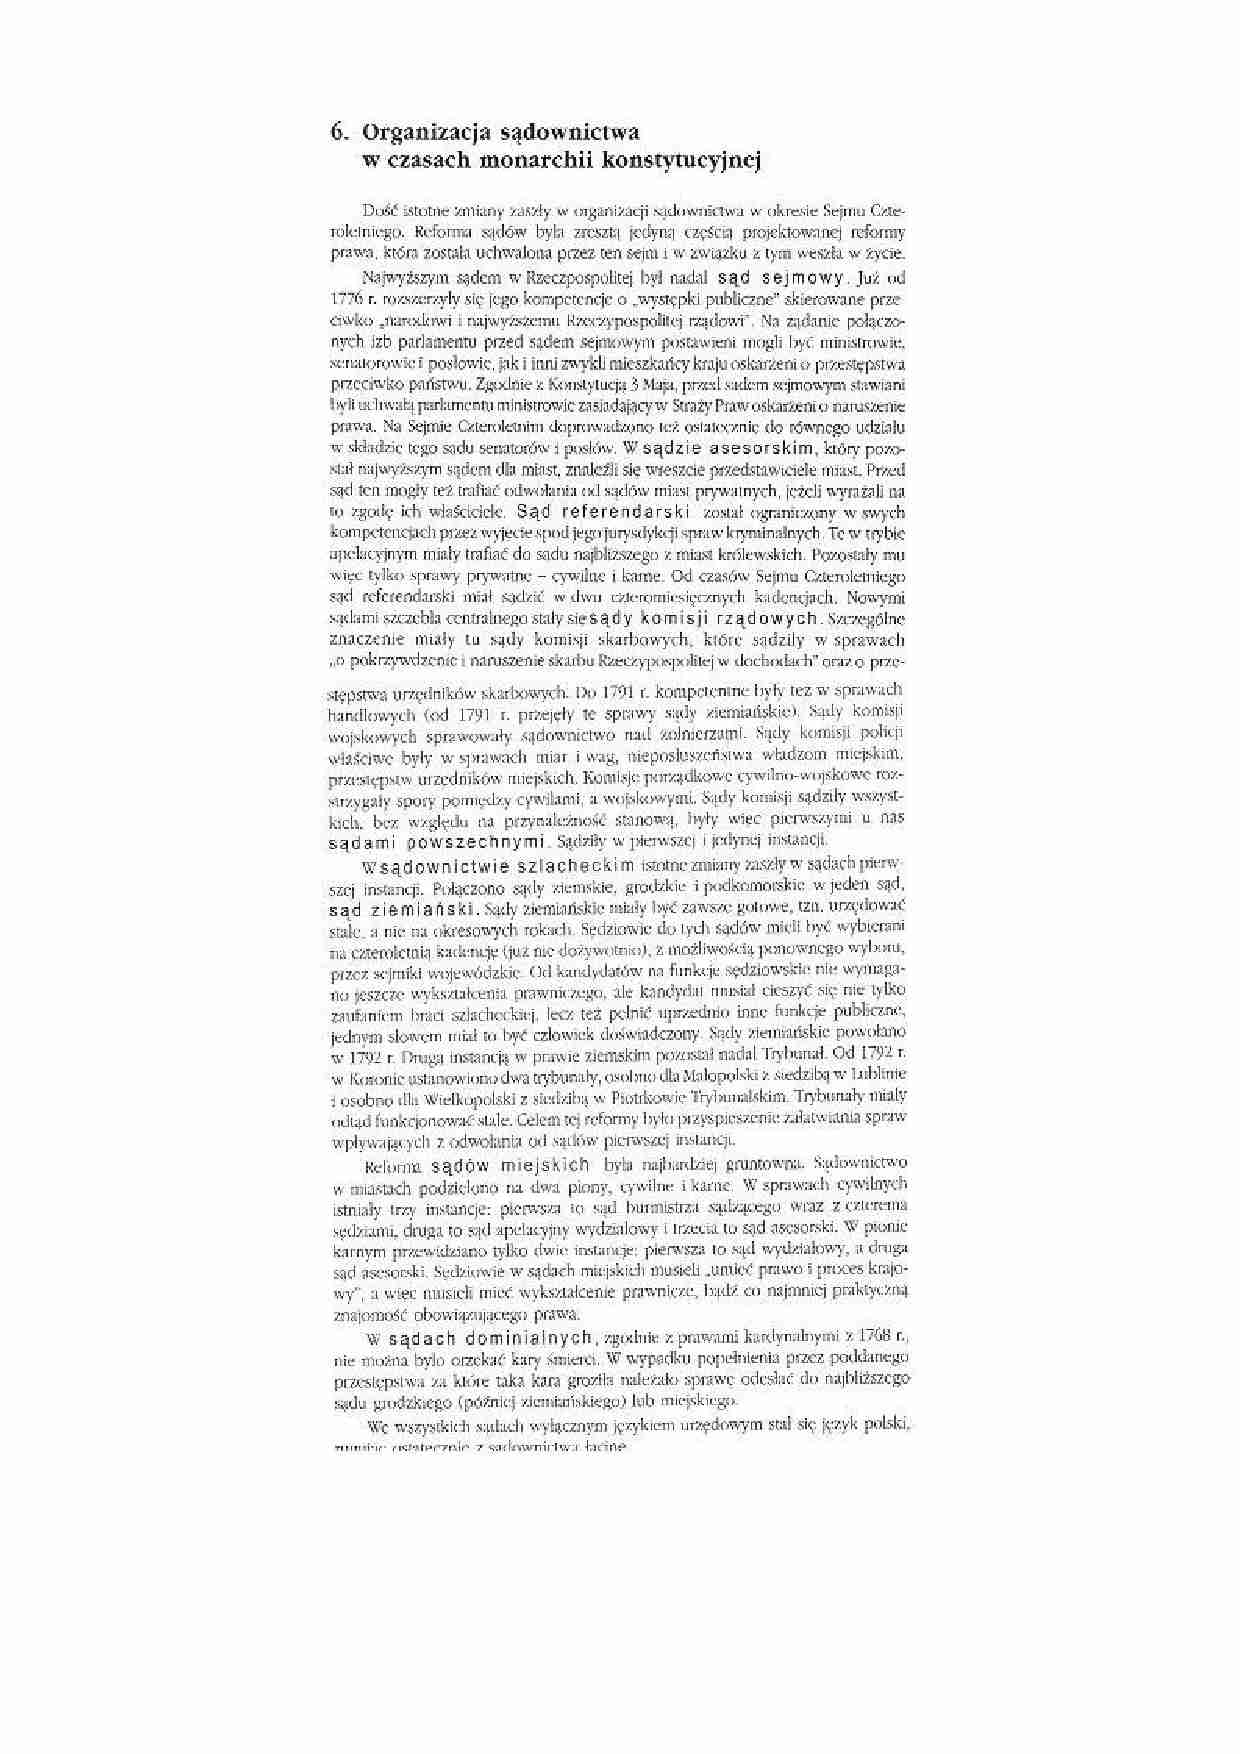 Organizacja sądownictwa w czasie monarchii konstytucyjnej - strona 1